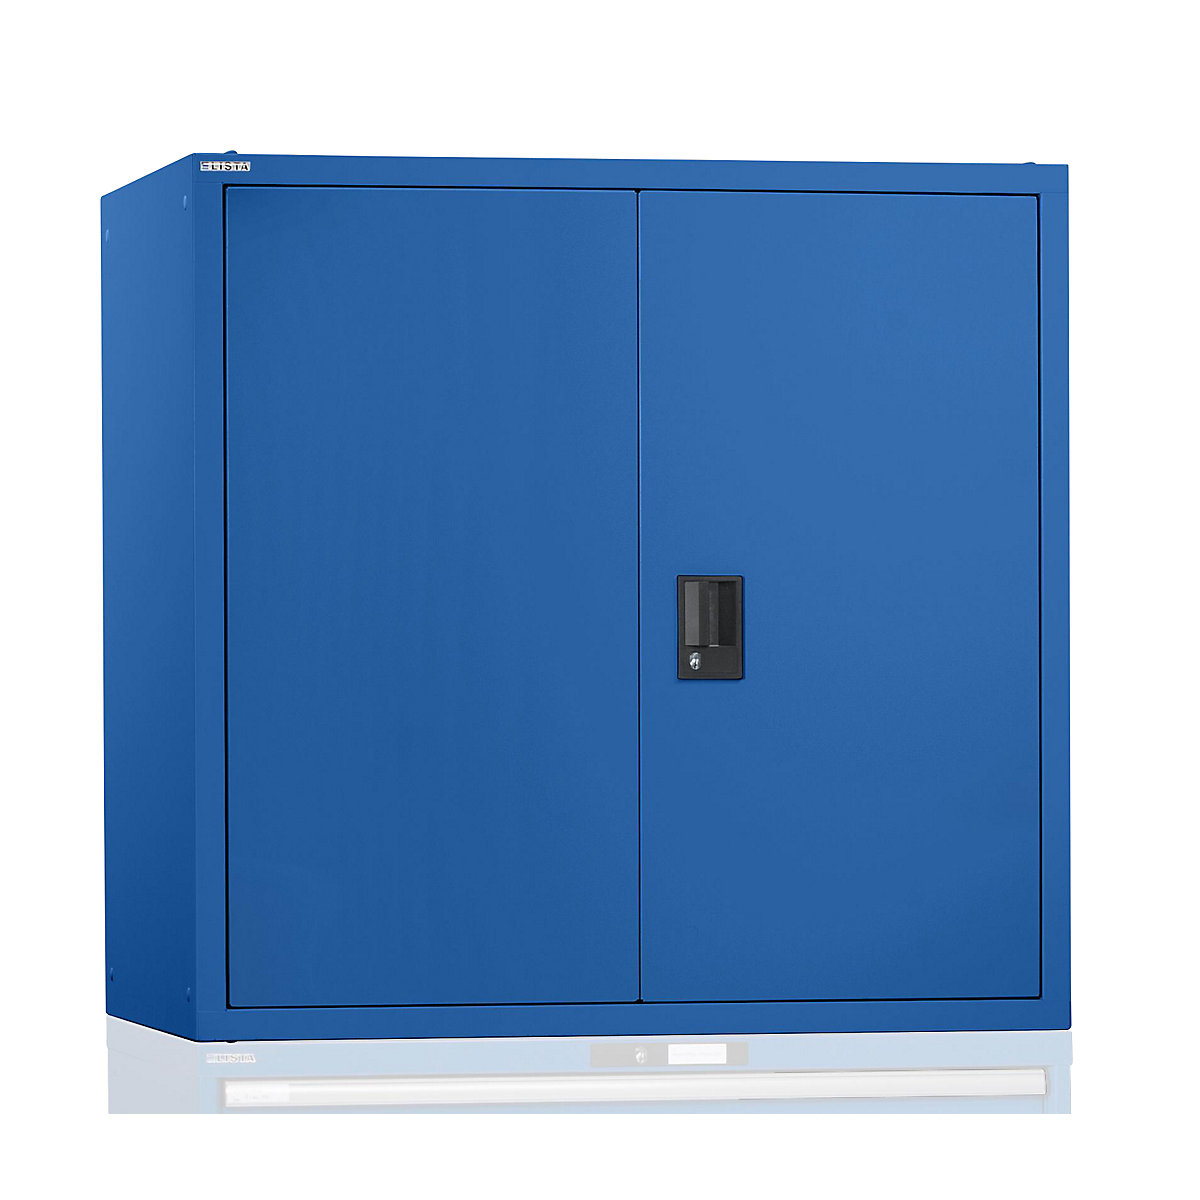 Vrhnja omarica s krilnimi vrati – LISTA, z vrati iz polne pločevine, VxŠxG 1000 x 1023 x 725 mm, encian modra-7